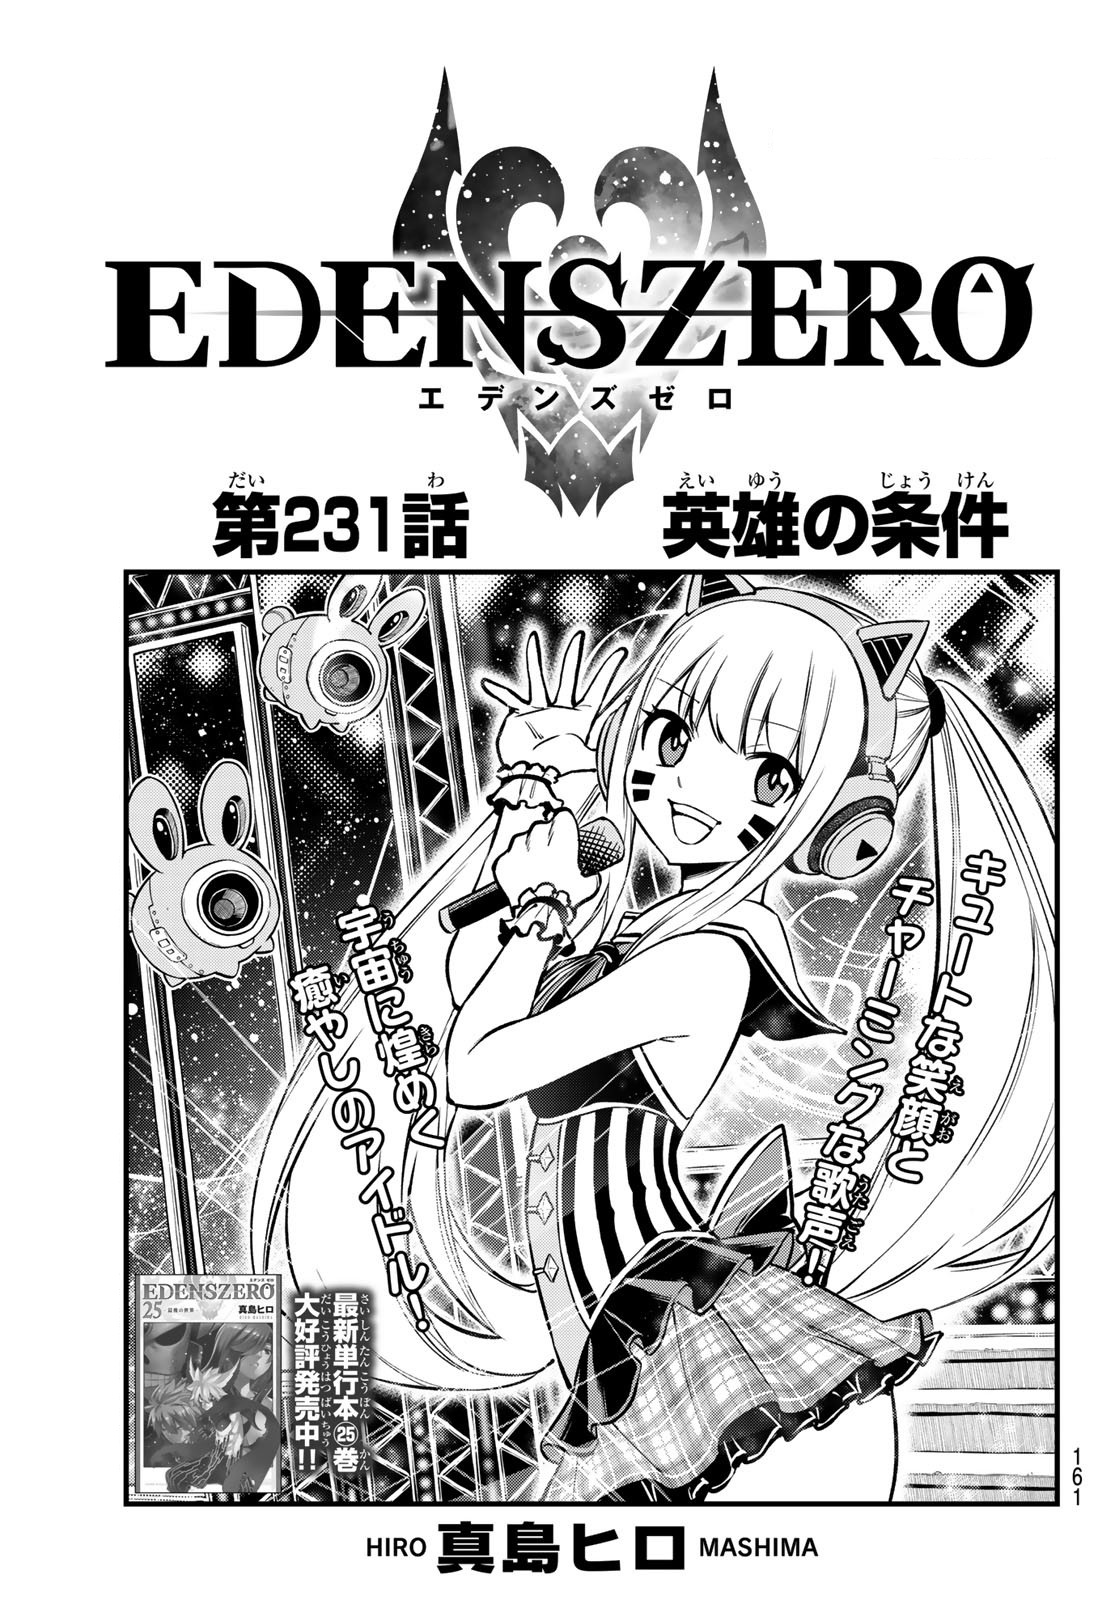 Edens Zero News - Chapter 130 New Manga Characters 